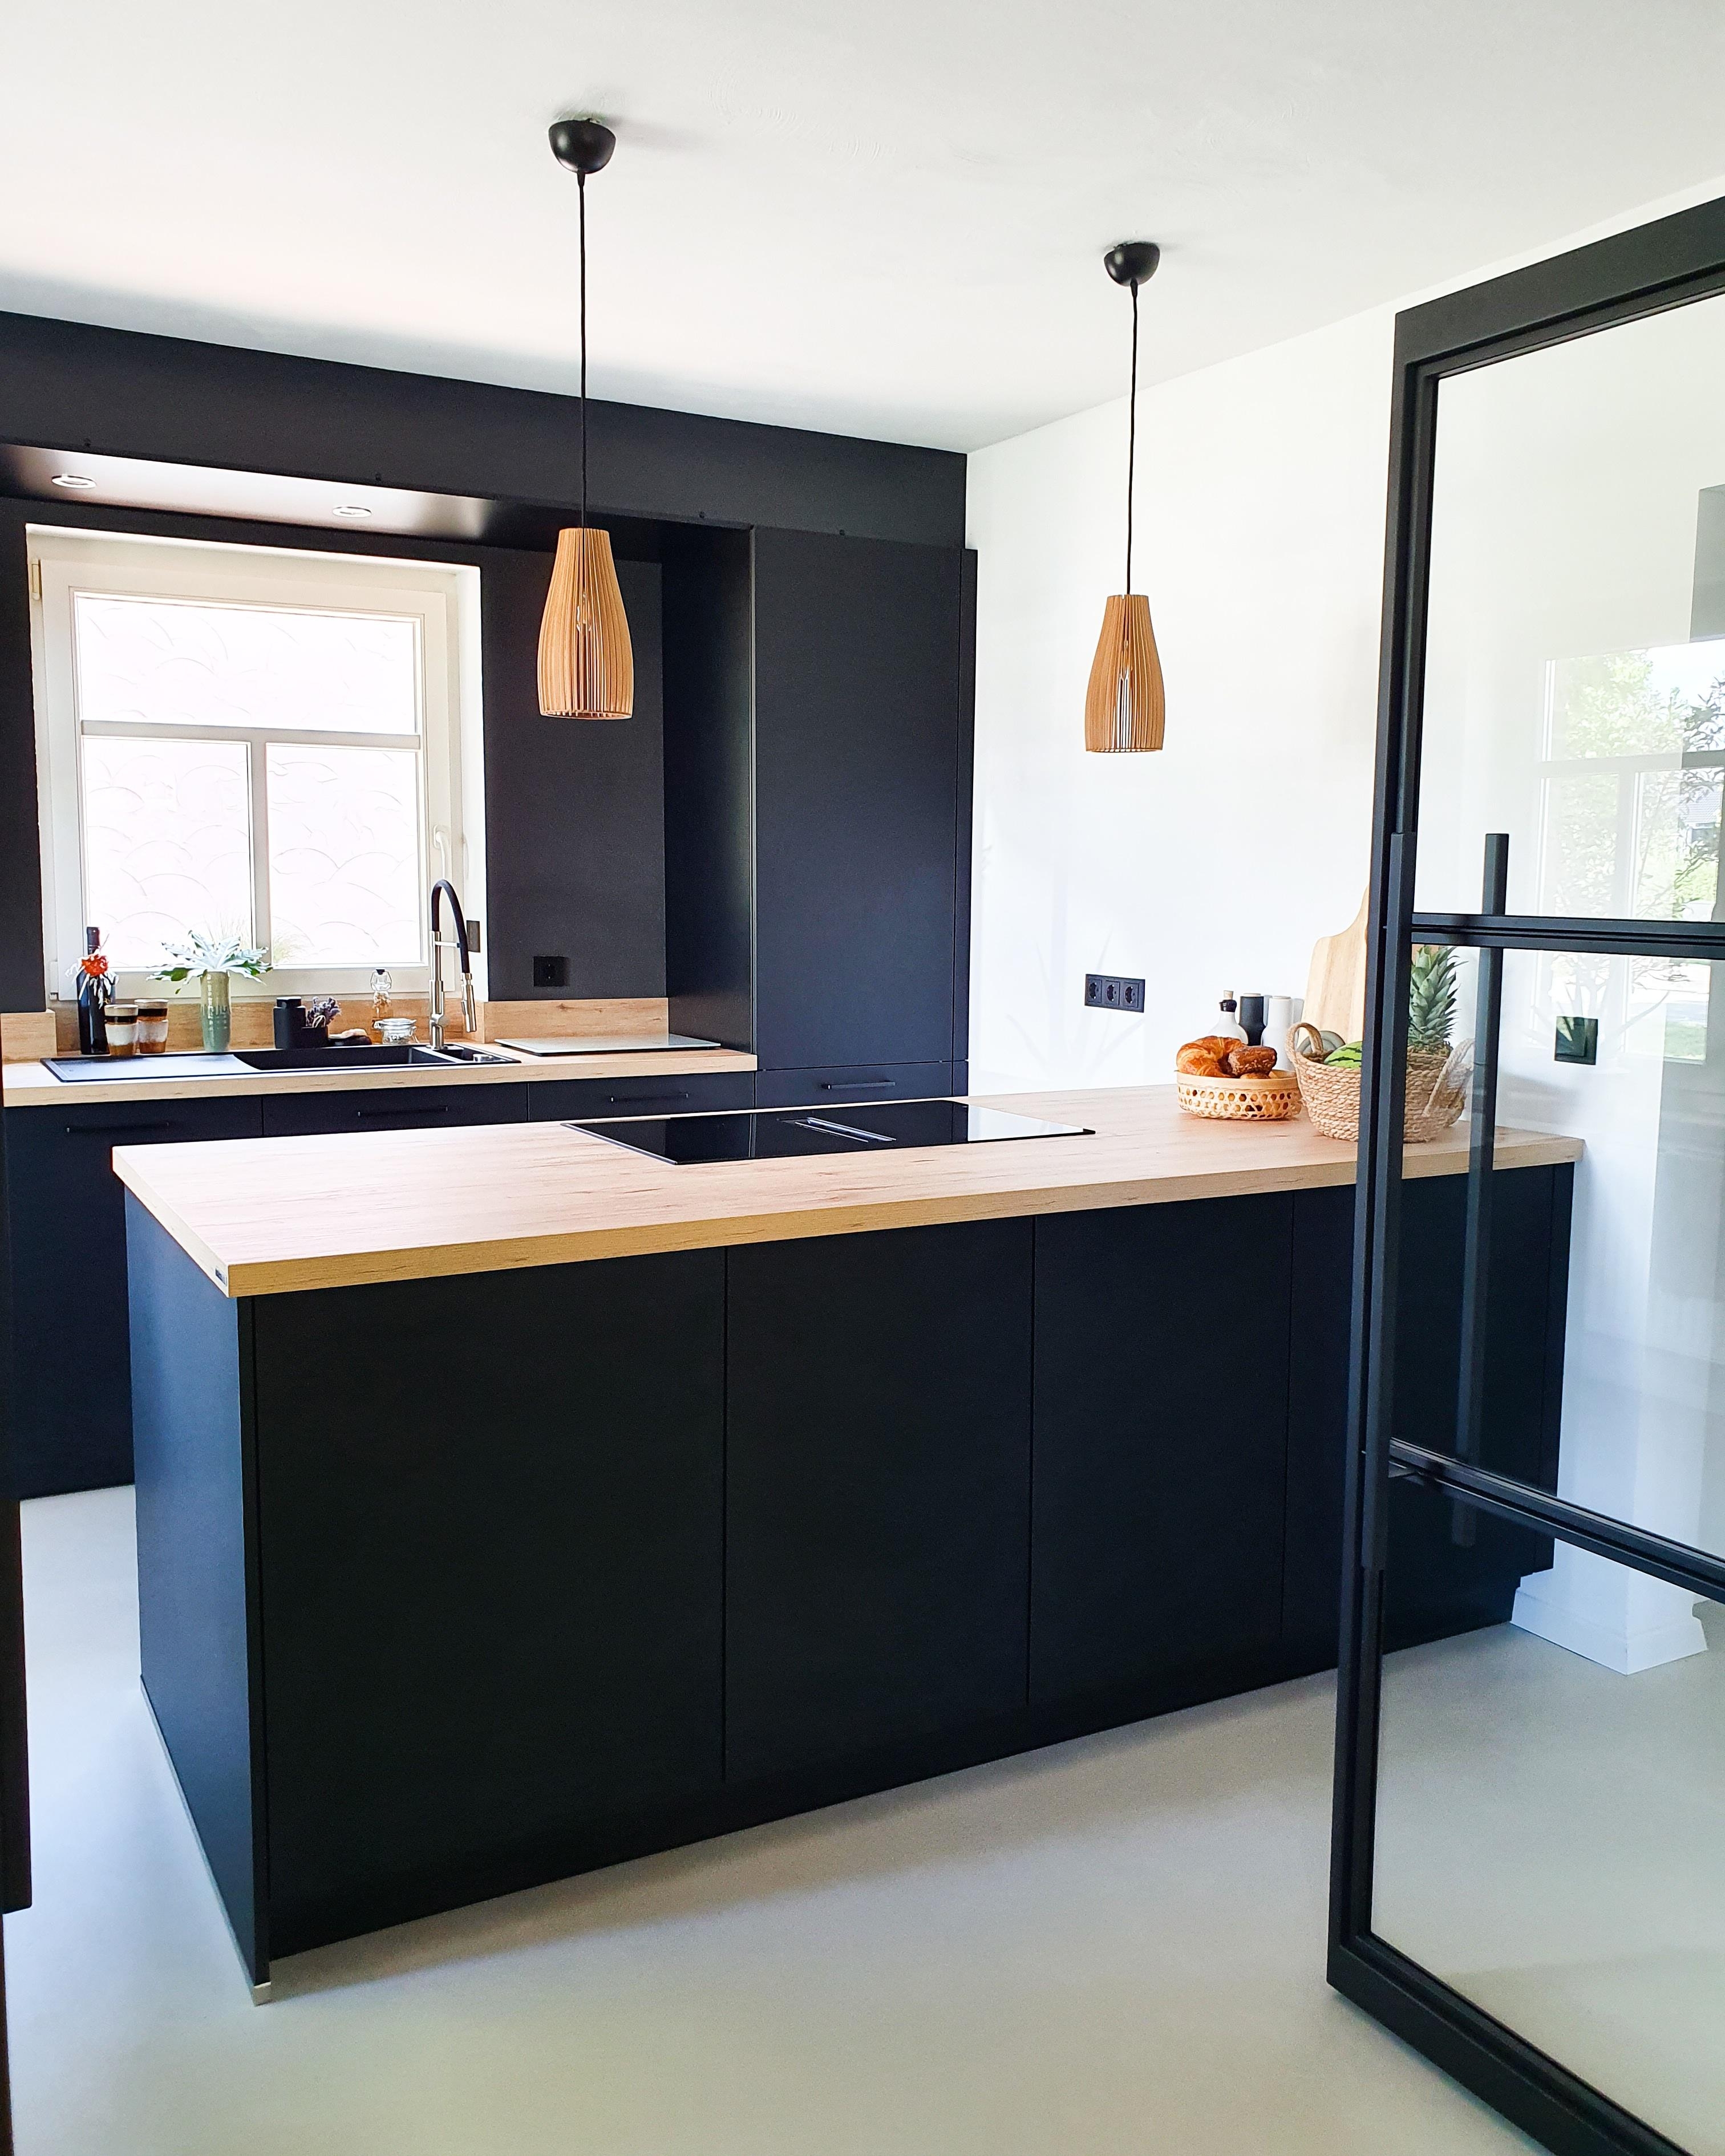 #schwarzeküche
#küche #skandinavianhome #industrietür 
#kitchenstories #pilea 